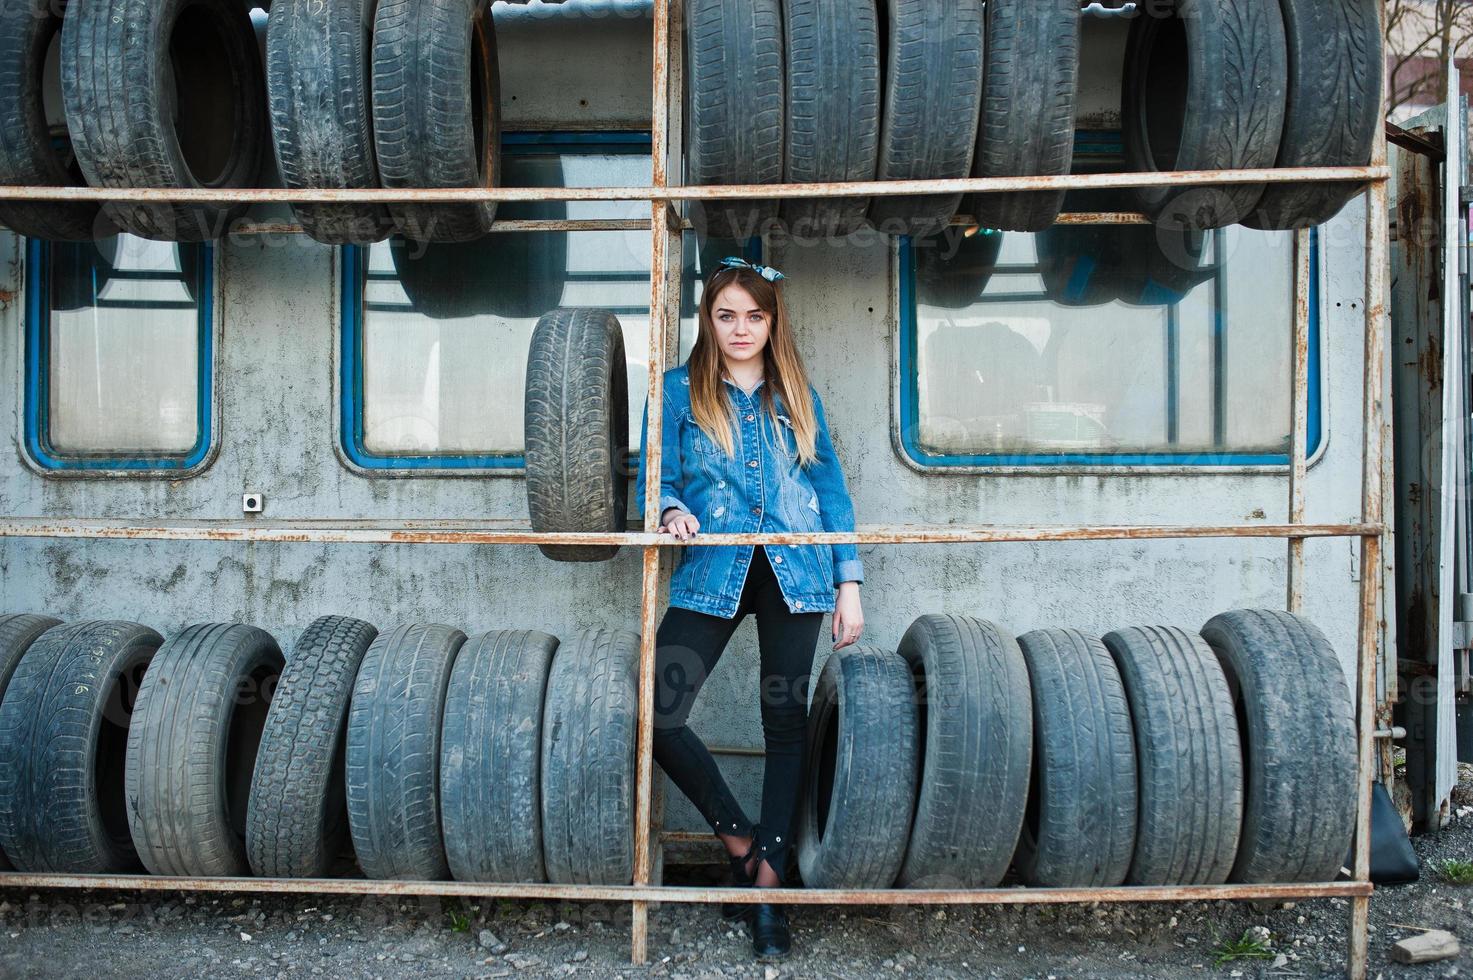 giovane ragazza hipster in giacca di jeans e sciarpa per la testa nella zona di montaggio dei pneumatici. foto